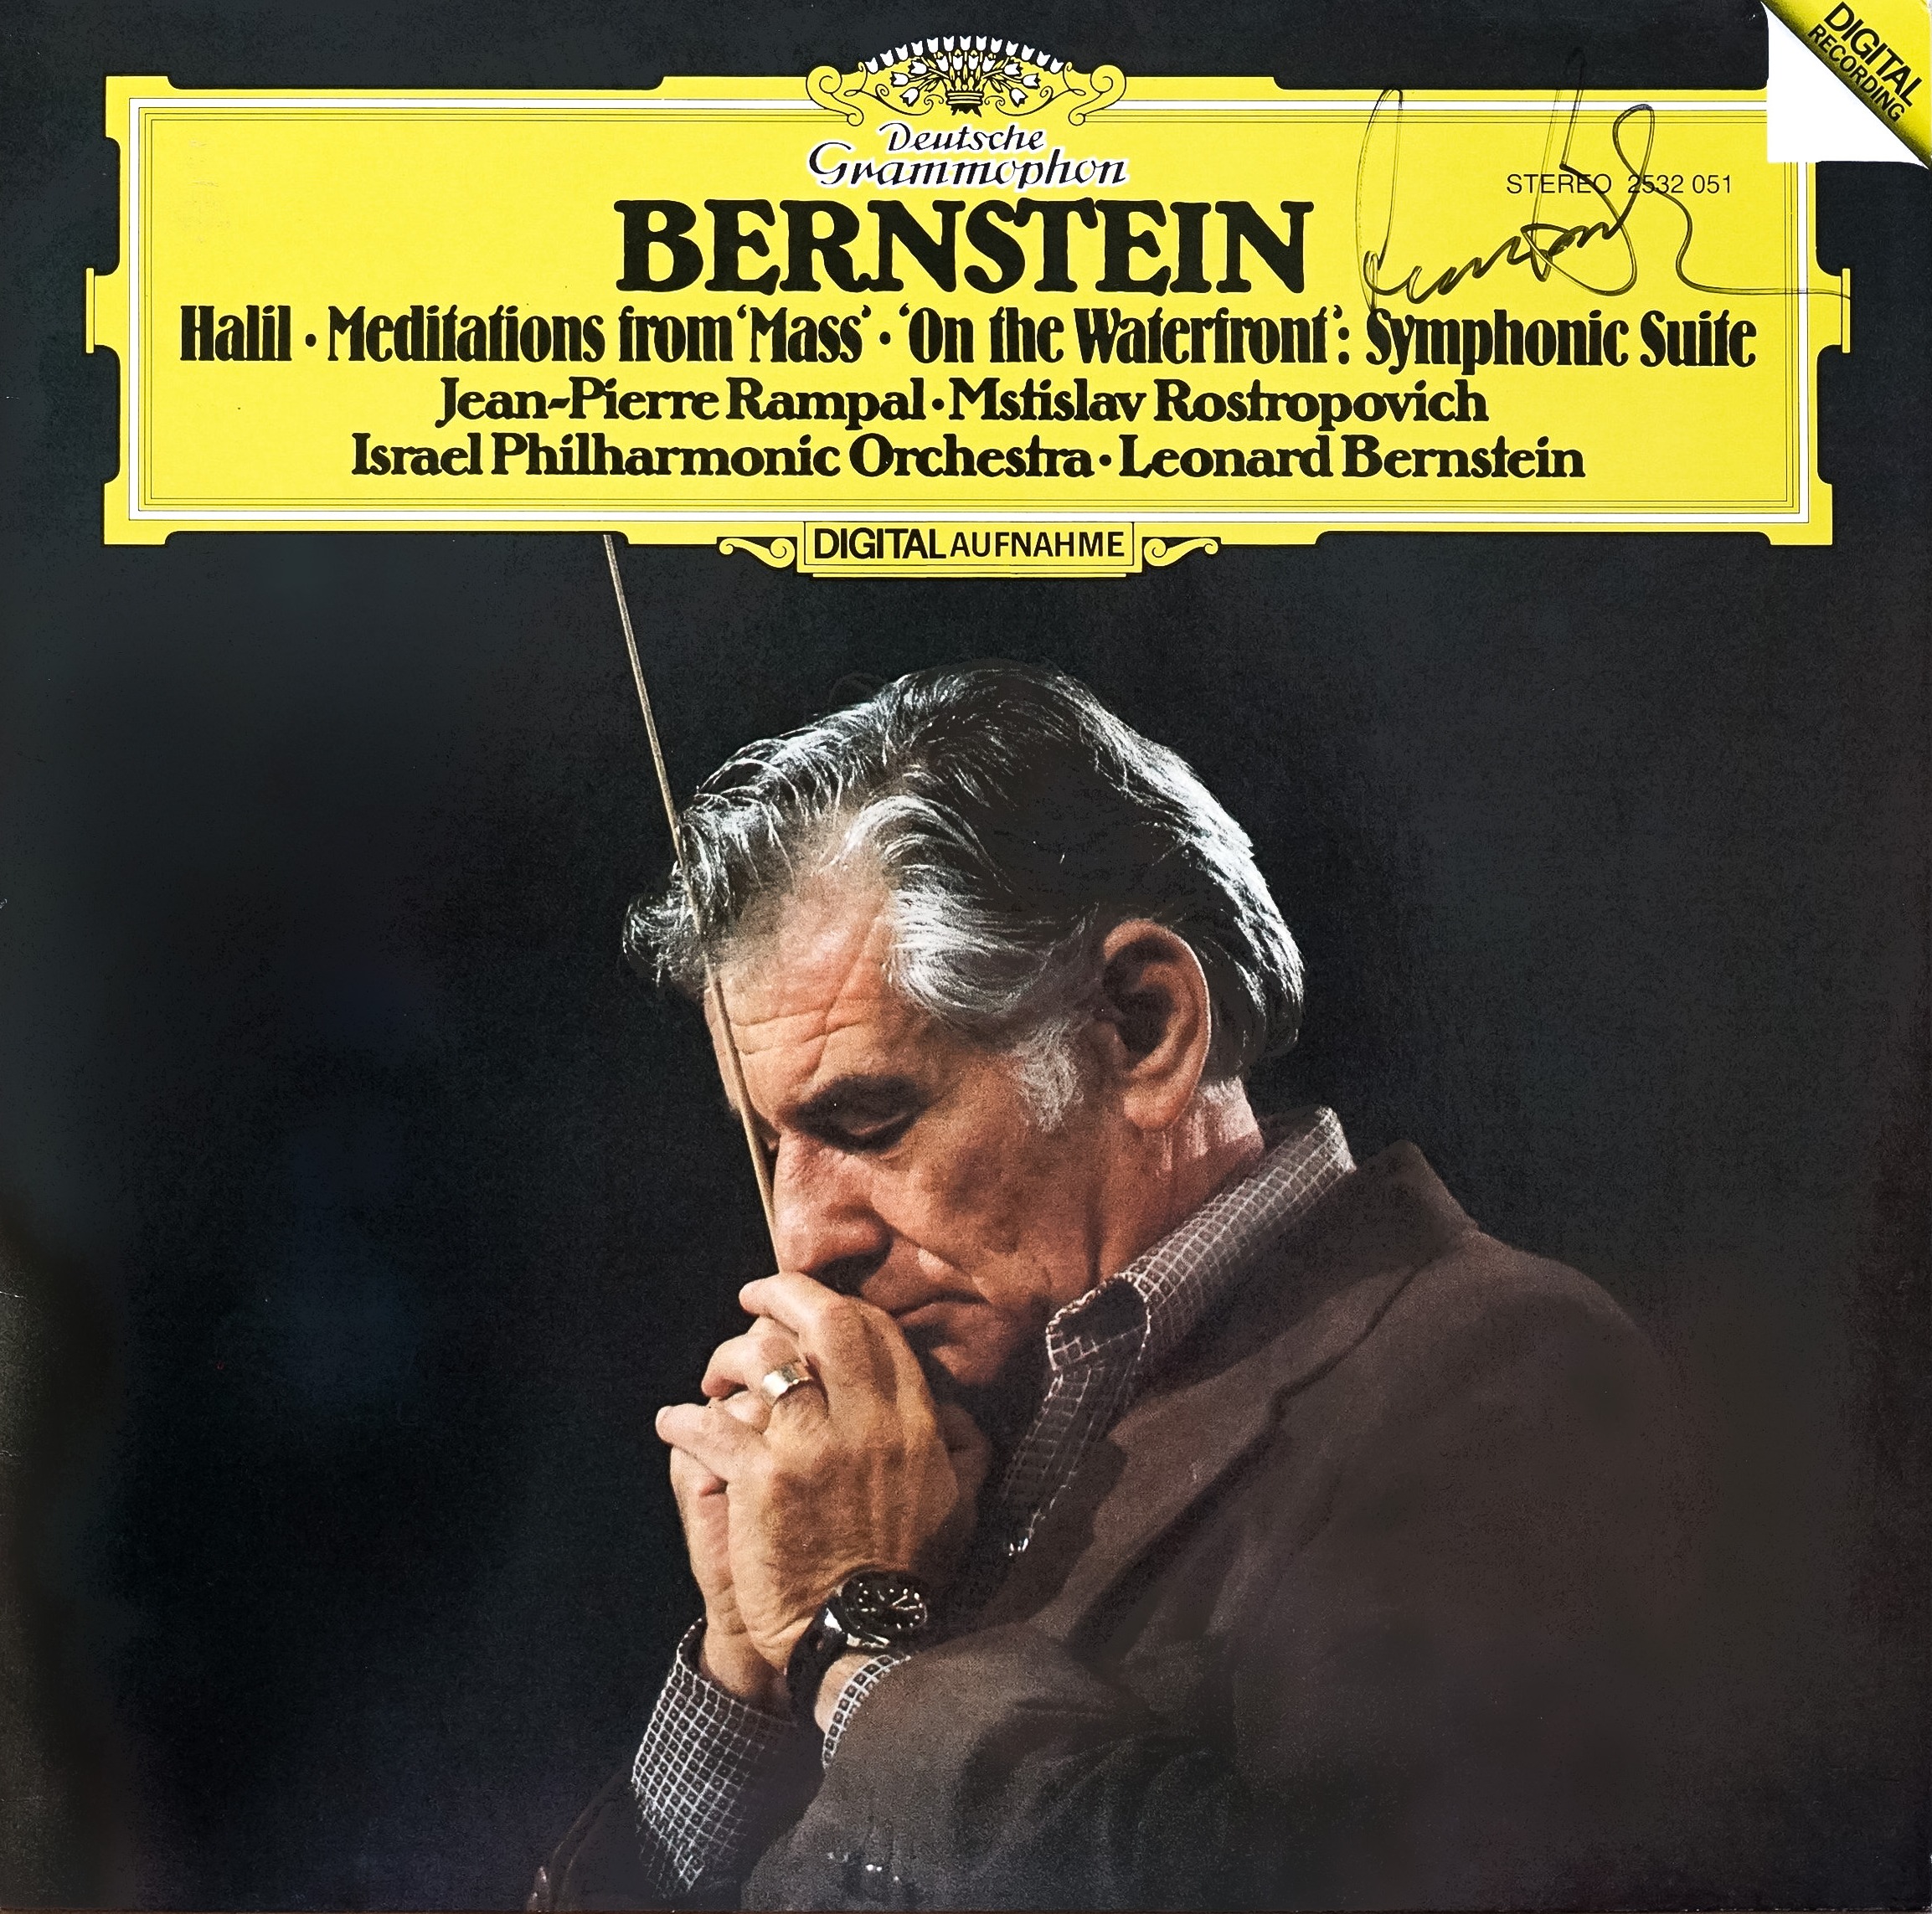 Schallplatte von Leonard Bernstein mit Signatur